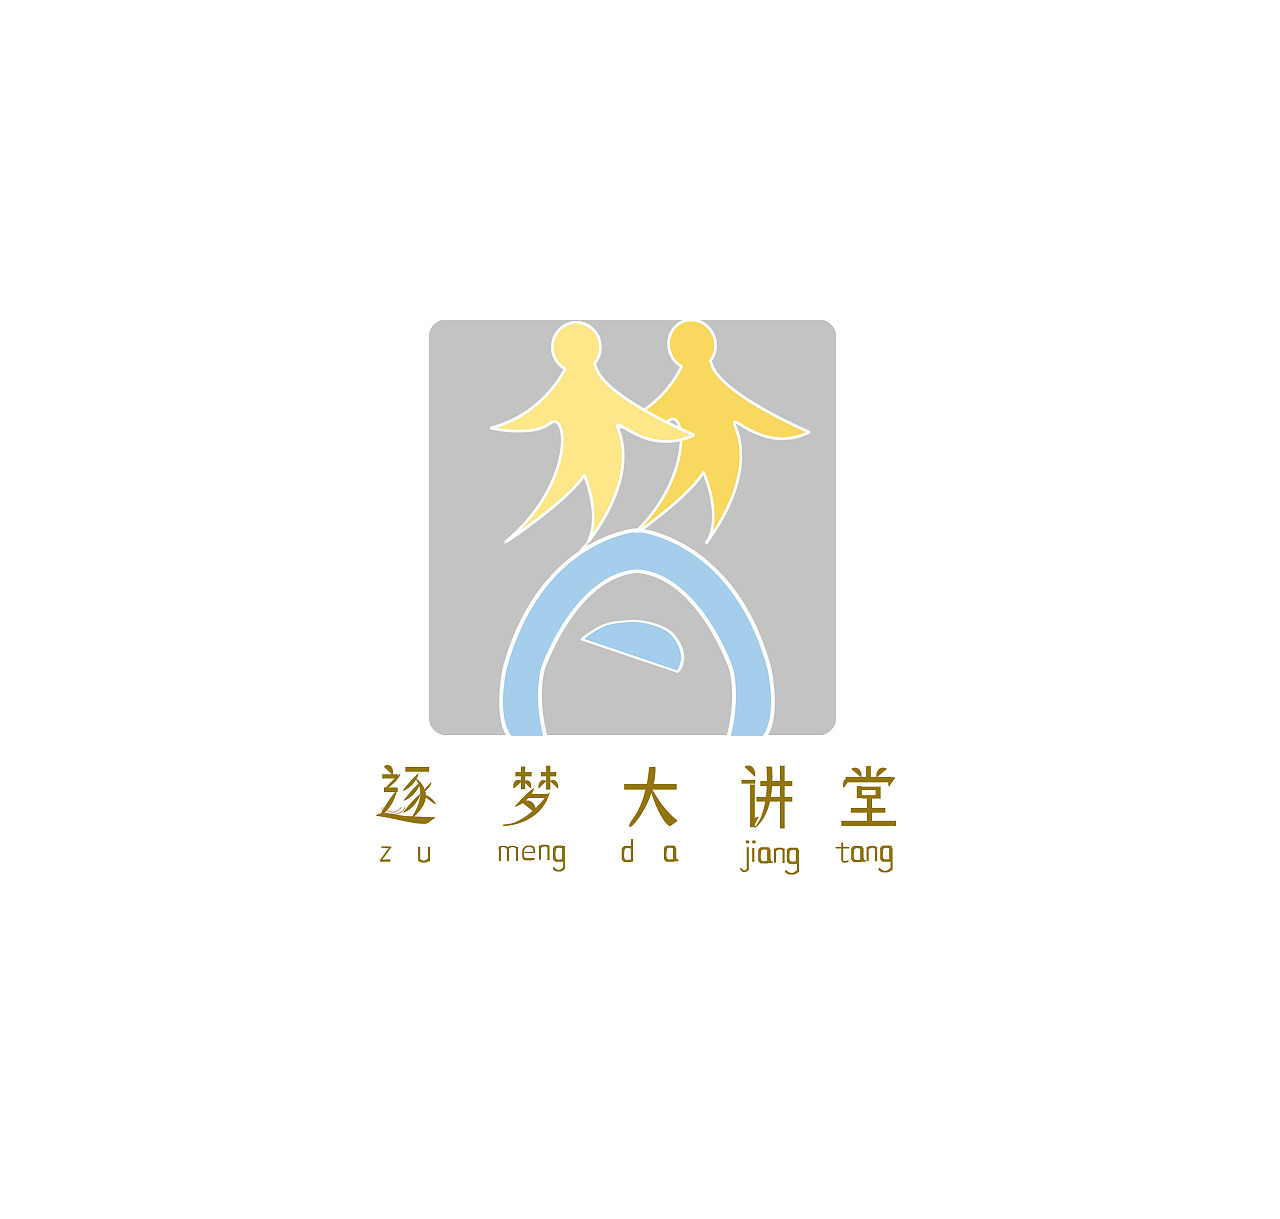 原创设计 安徽机电职业技术学院"逐梦大讲堂"logo